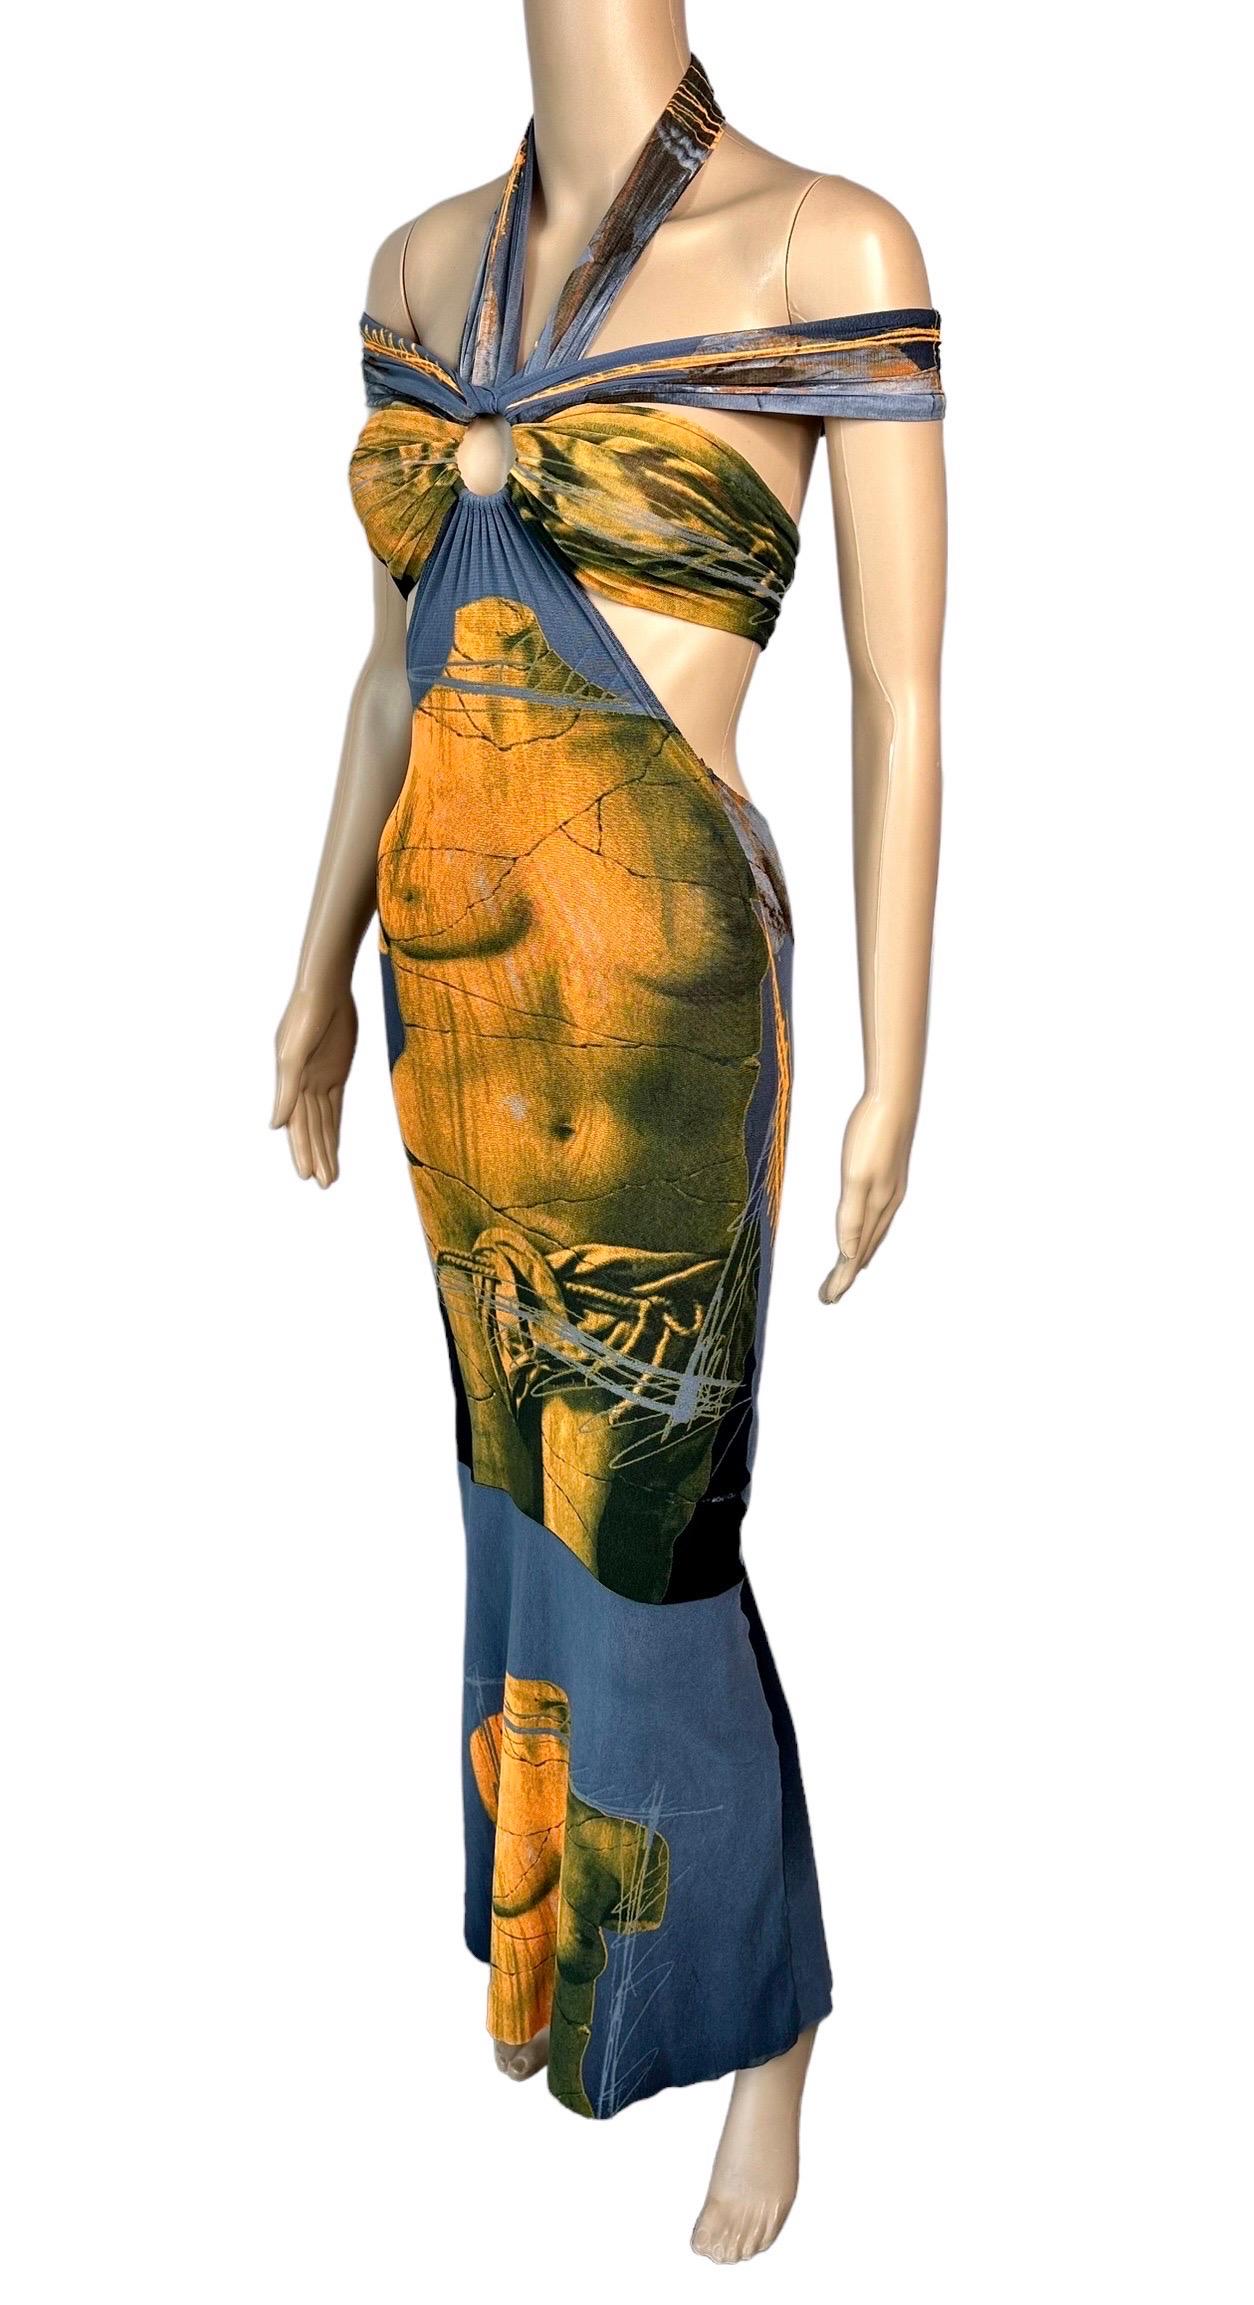 Jean Paul Gaultier Soleil S/S 1999 Vintage Venus De Milo Cutout Mesh Sheer Dress Size XS

